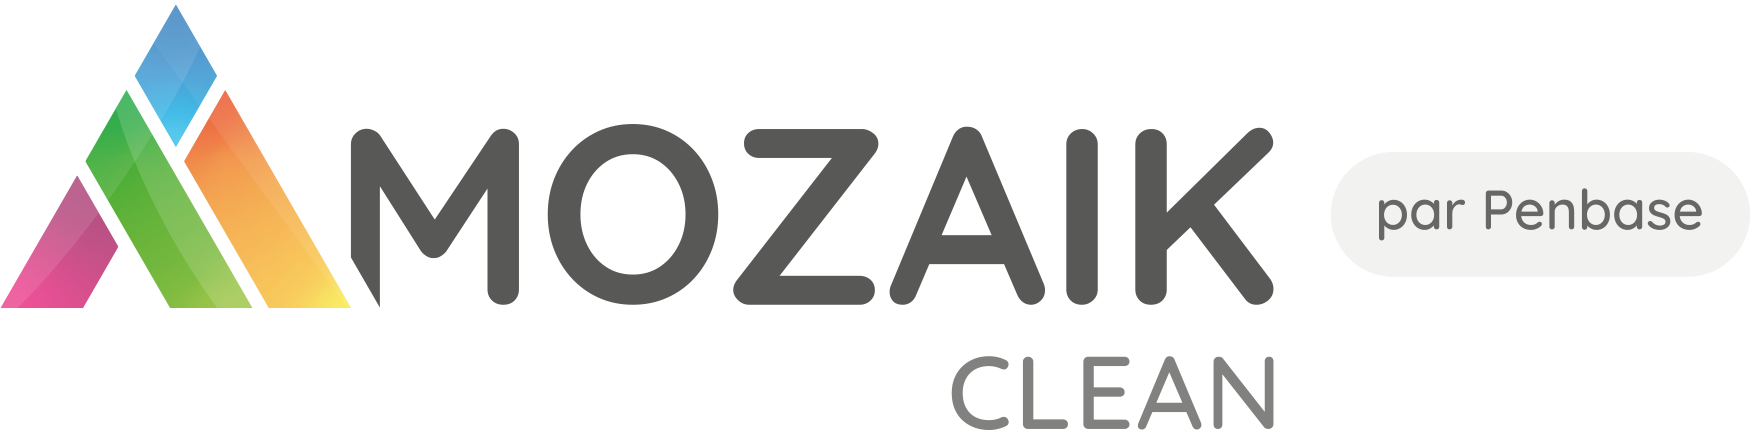 MOZAIK Clean - Capture d'écran 2